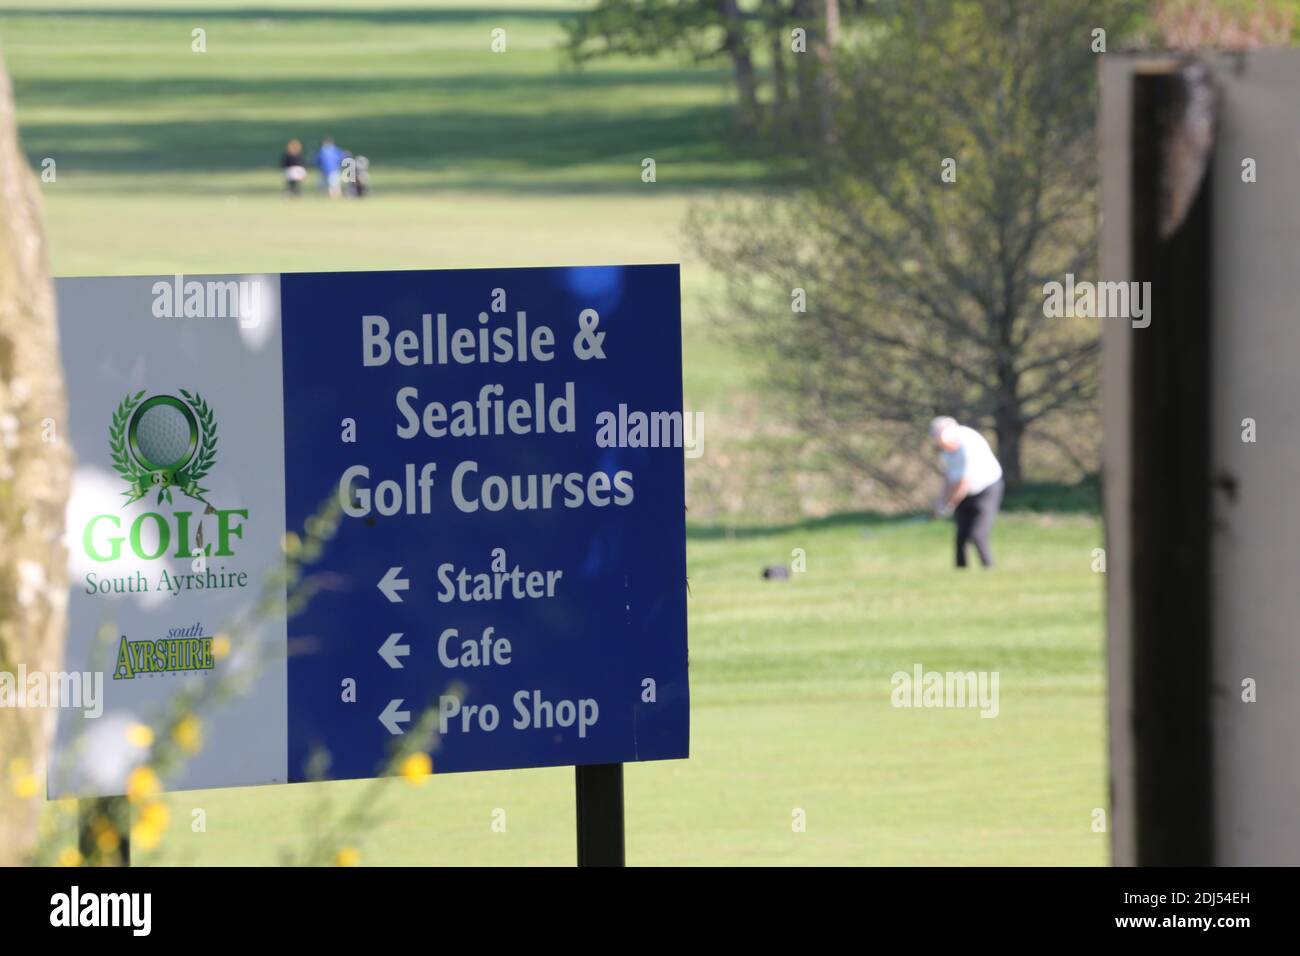 Parcours de golf et parc Belleisle Seafield, South Ayrshire, Écosse, Royaume-Uni. Belleisle Estate est une attraction familiale populaire avec son parc de cerfs, son aire de jeux pour enfants, ses promenades dans les bois et son jardin clos formel.UN programme complet de 3,7 millions de livres pour restaurer Belleisle Estate a commencé en 2014, après que le projet ait obtenu une subvention de 1,9 millions de livres sterling du Heritage Lottery Fund. Le domaine dispose également de deux parcours de golf publics de 18 trous conçus par M. James Braid (représentés par une statue en bois sculpté). Le club de golf récemment restauré est ouvert au public et propose un café et des toillets Banque D'Images